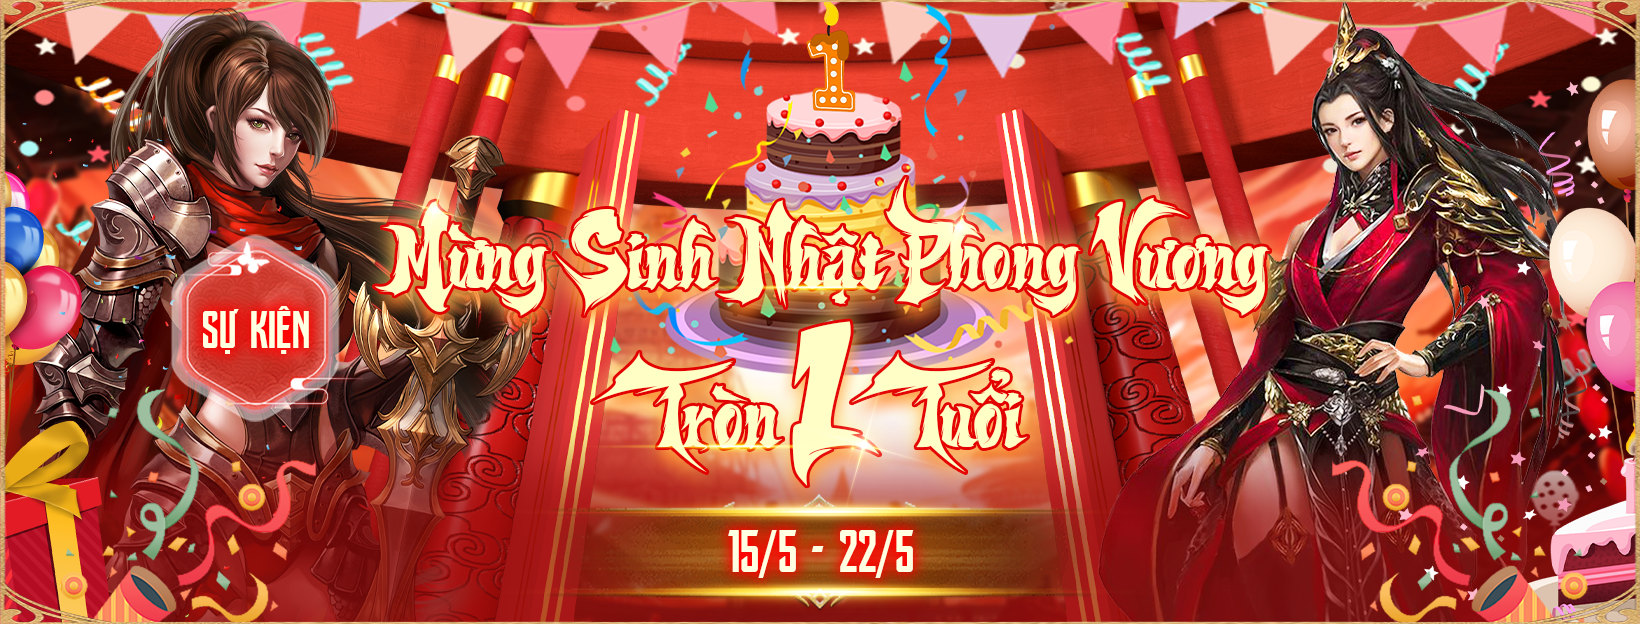 Phong Vương ADNX Mobile mừng sinh nhật một tuổi Photo-1715478470350-1715478473394854262643